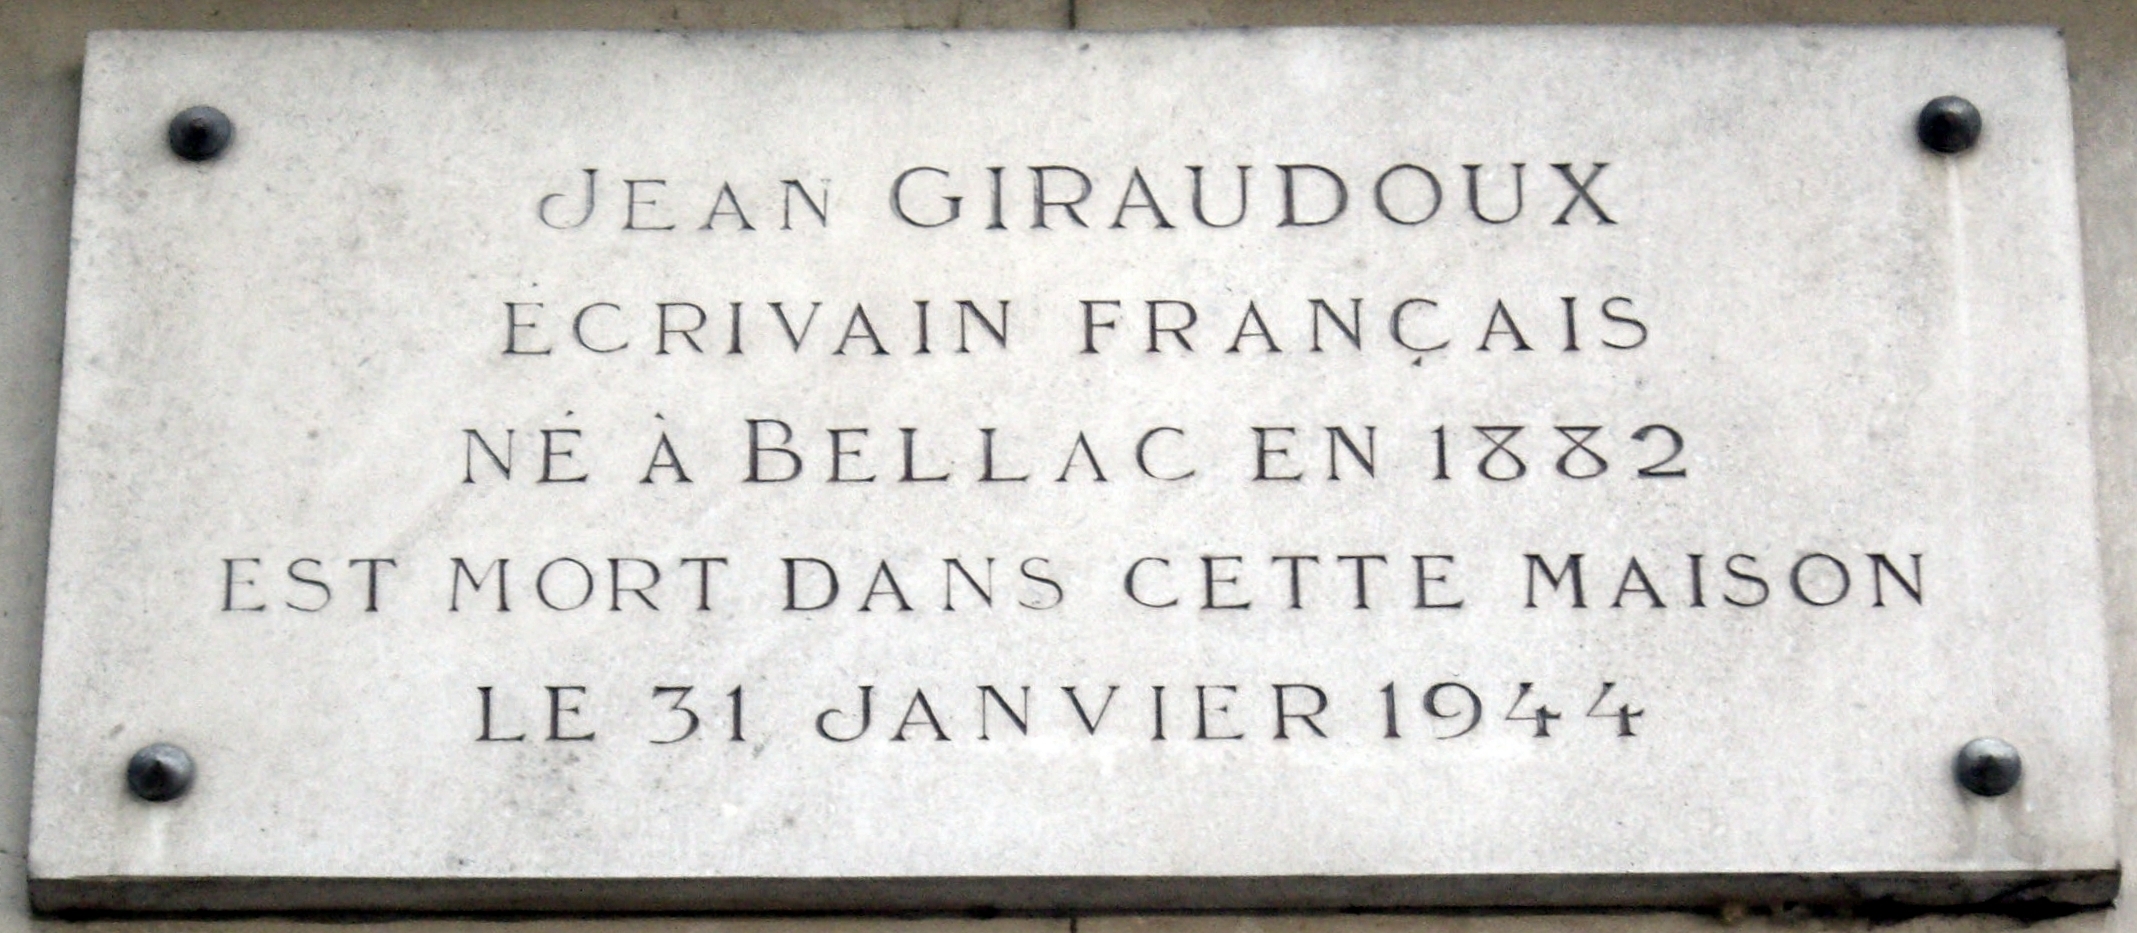 Placa conmemorativa no número 89 de Quay d'Orsay, en París onde morreu Jean Giraudoux